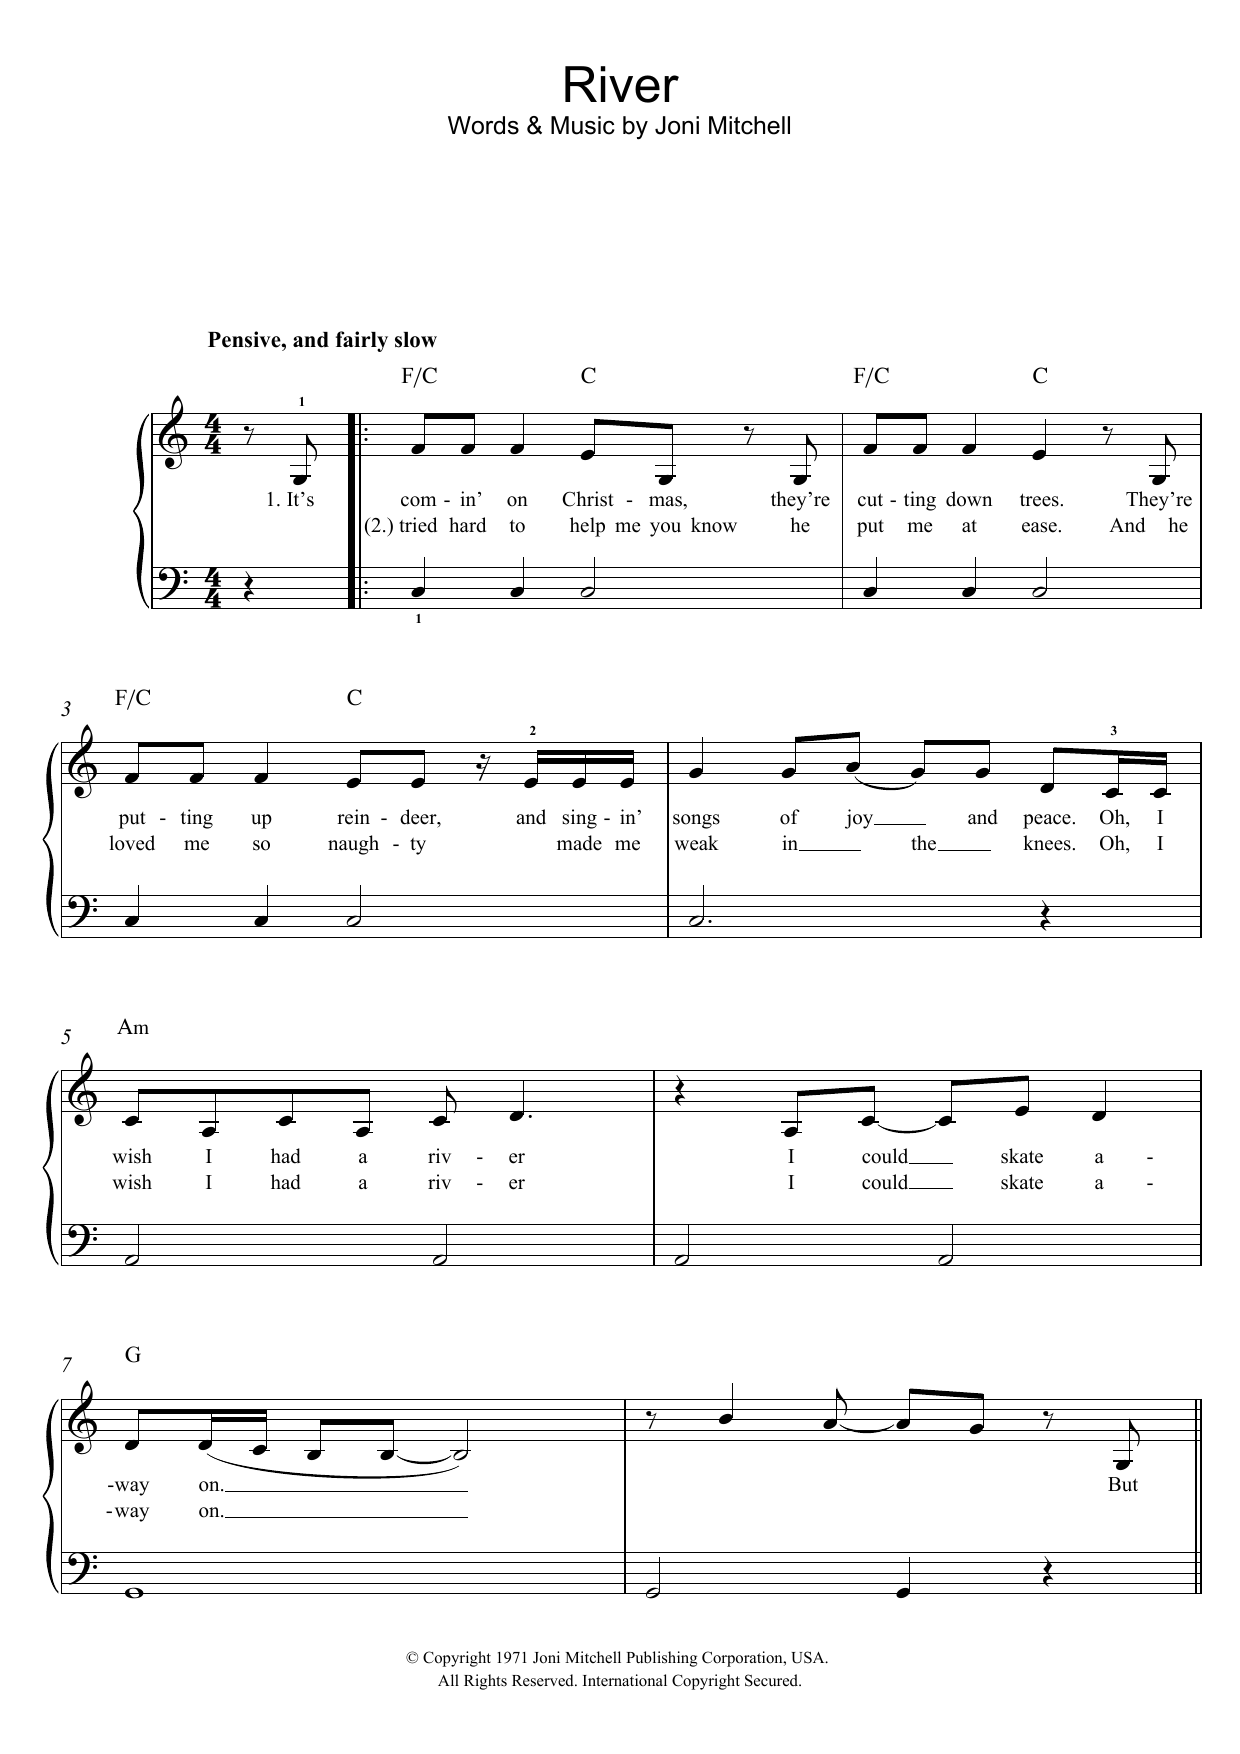 Download Joni Mitchell River Sheet Music